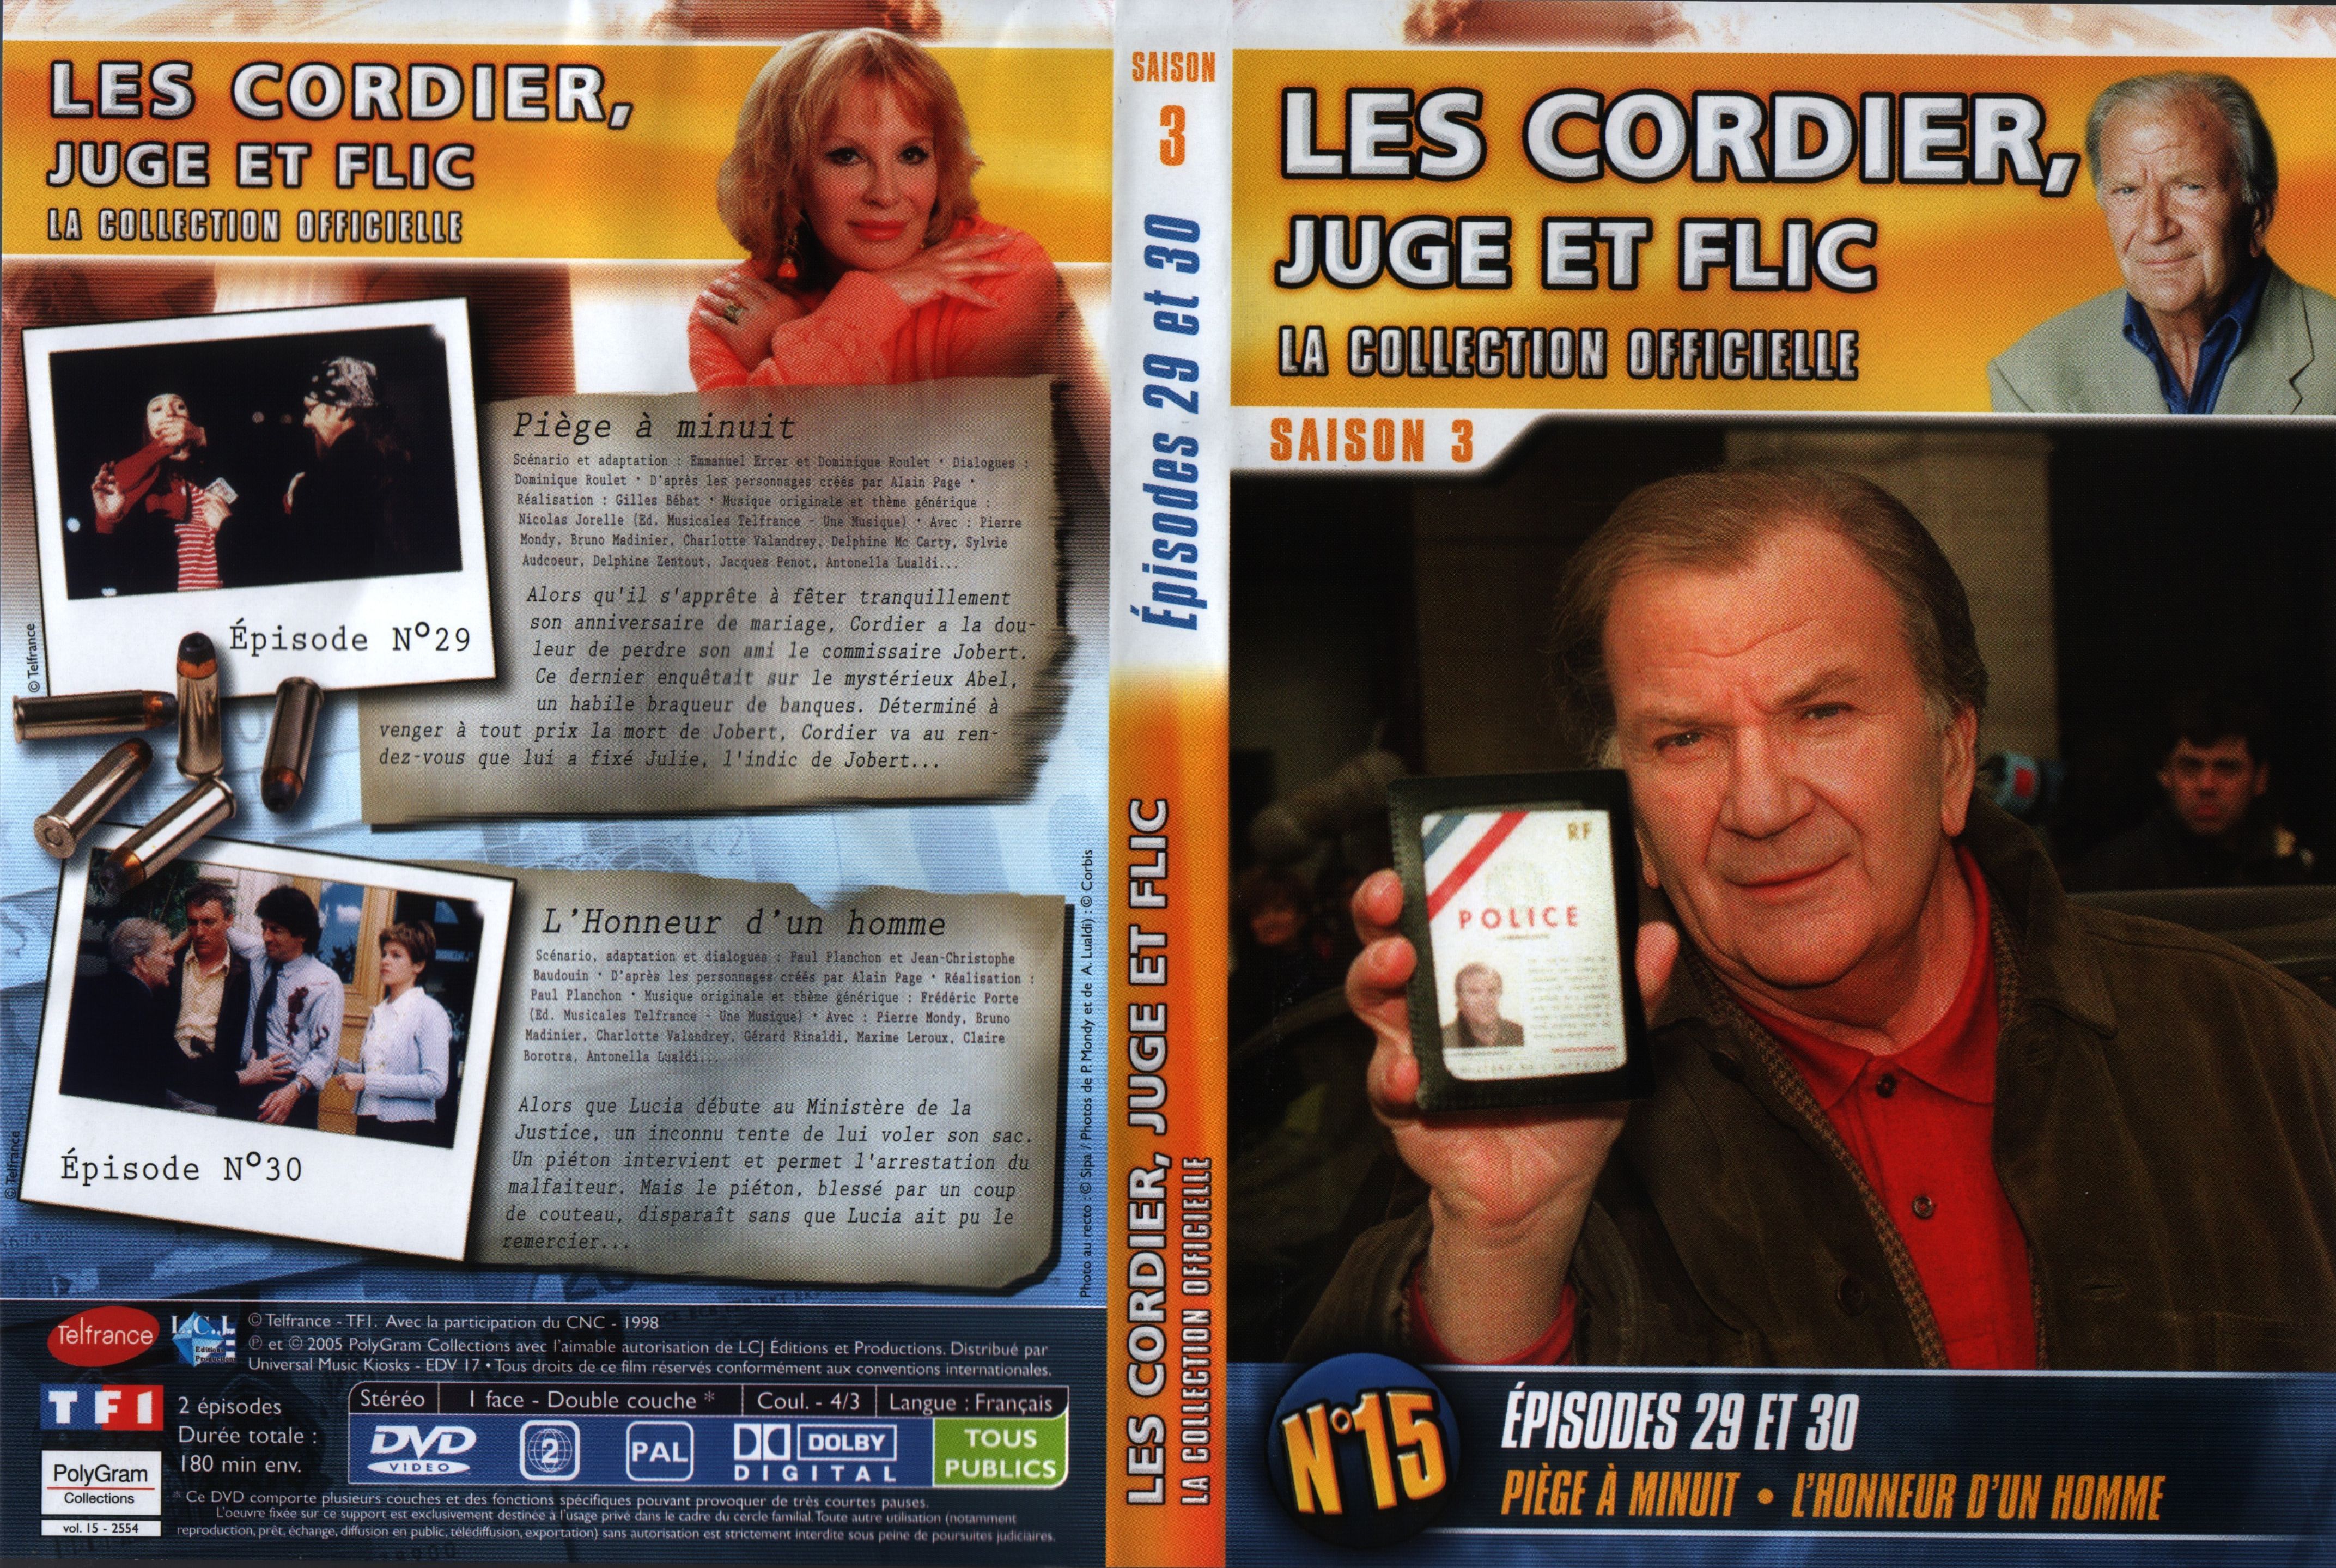 Jaquette DVD Les cordier juge et flic Saison 3 vol 15